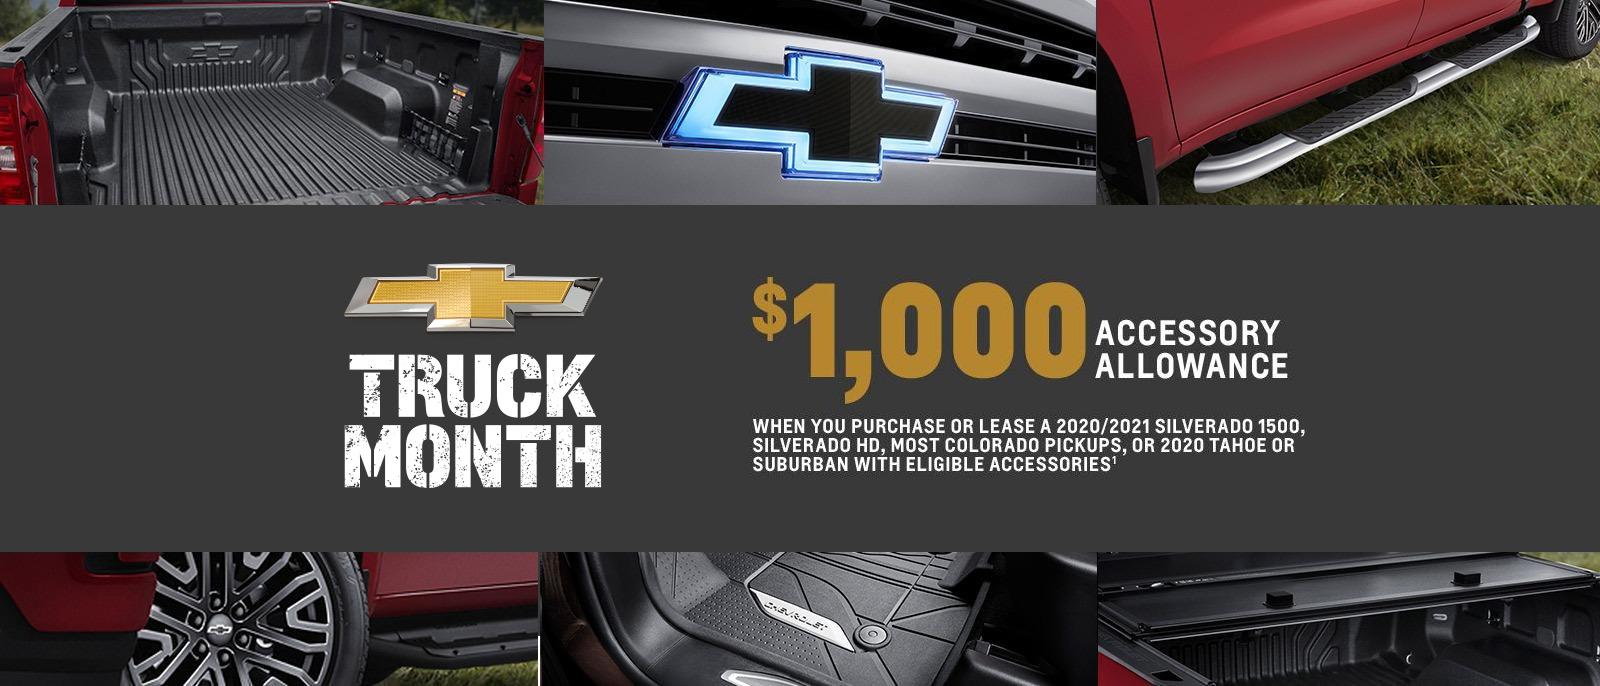 Truck Month - $1000 Accessory Allowance